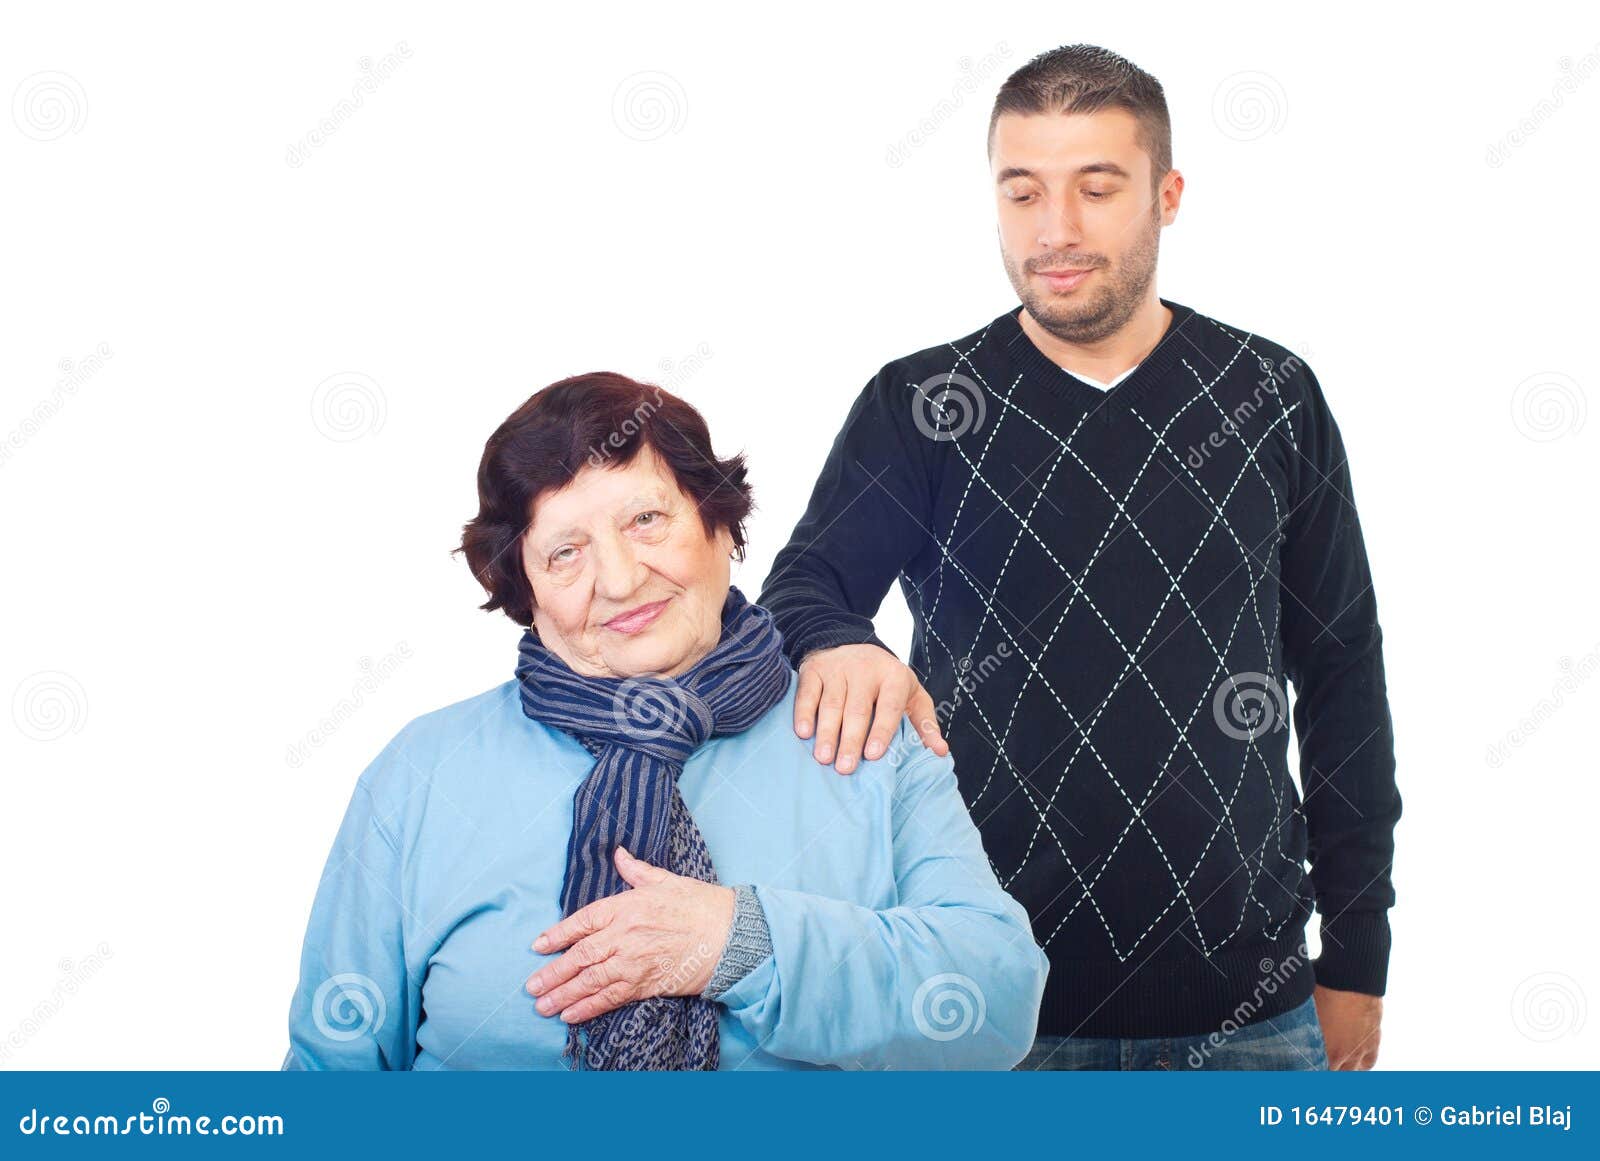 可爱的小孙子祝贺微笑的祖母给手工贺卡 库存照片. 图片 包括有 欢乐, 舒适, 祝贺, 孙子, 手工制造 - 229746488